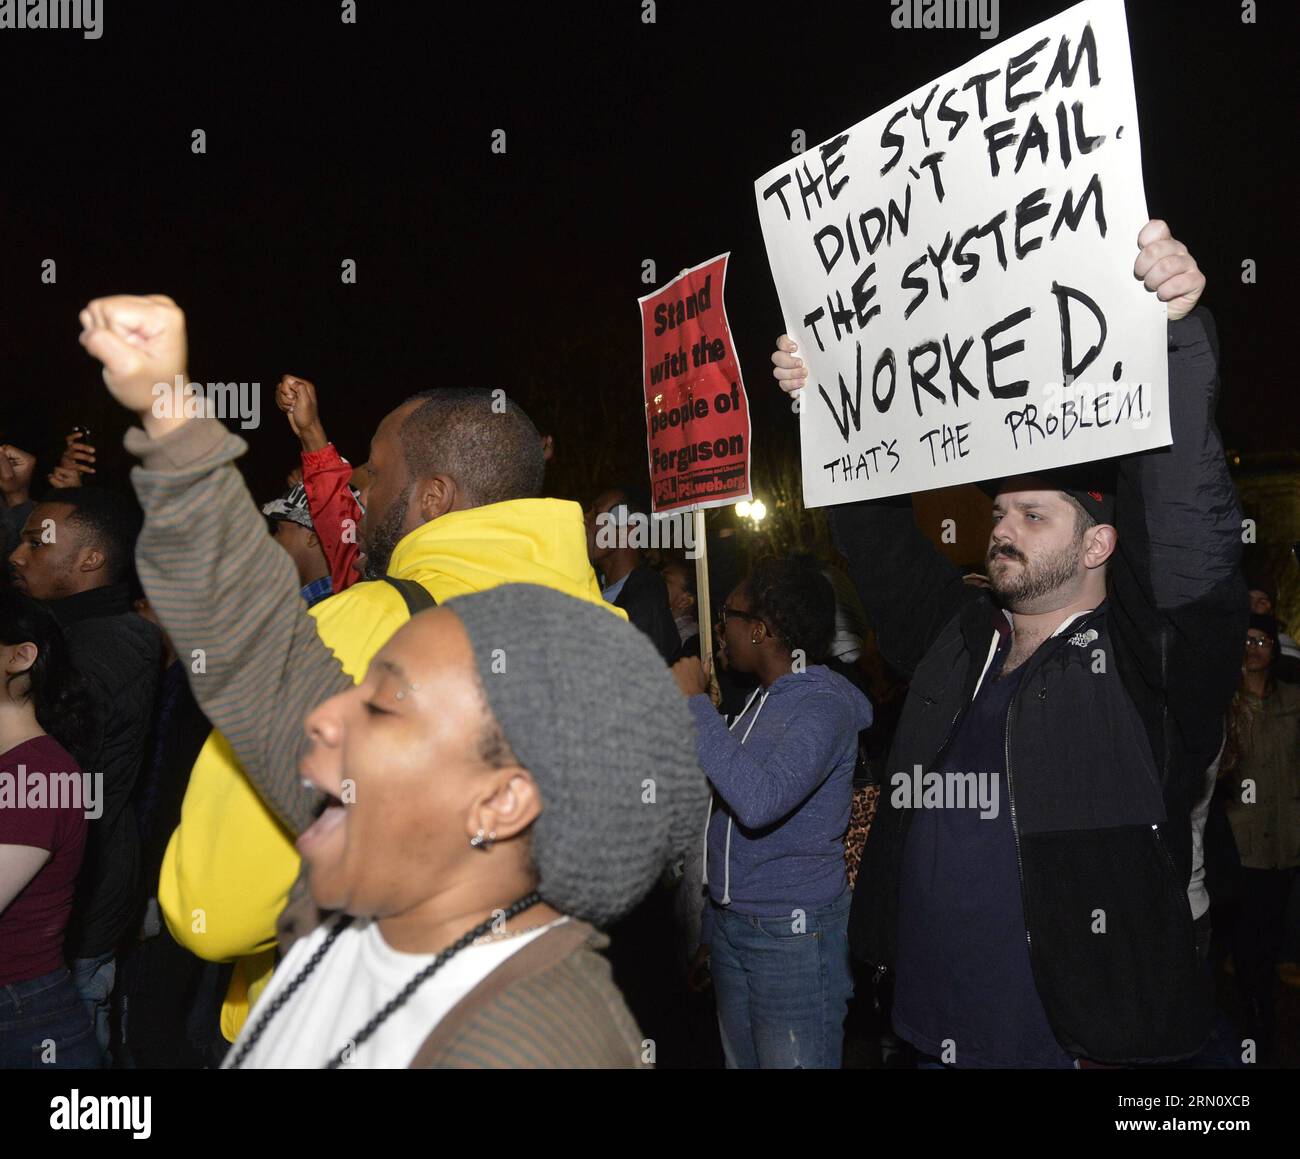 (141125) -- WASHINGTON D.C., Leute protestieren gegen die Entscheidung der Grand Jury, den Polizeibeamten Darren Wilson bei der tödlichen Erschießung des afroamerikanischen Jugendlichen Michael Brown in Ferguson im August vor dem Weißen Haus in Washington D.C., USA, am 24. November 2014 nicht anzuklagen. Mehr als 200 Menschen nahmen am Montag an dem Protest vor dem Weißen Haus Teil. ) US-WASHINGTON D.C.-WHITE HOUSE-PROTEST-FERGUSON-SCHIESSEREI BaoxDandan PUBLICATIONxNOTxINxCHN Prominente aus Washington D C PROTESTIEREN gegen die Entscheidung der Grand Jury, den Polizeibeamten Darren Wilson bei der tödlichen Schießerei nicht anzuklagen Stockfoto